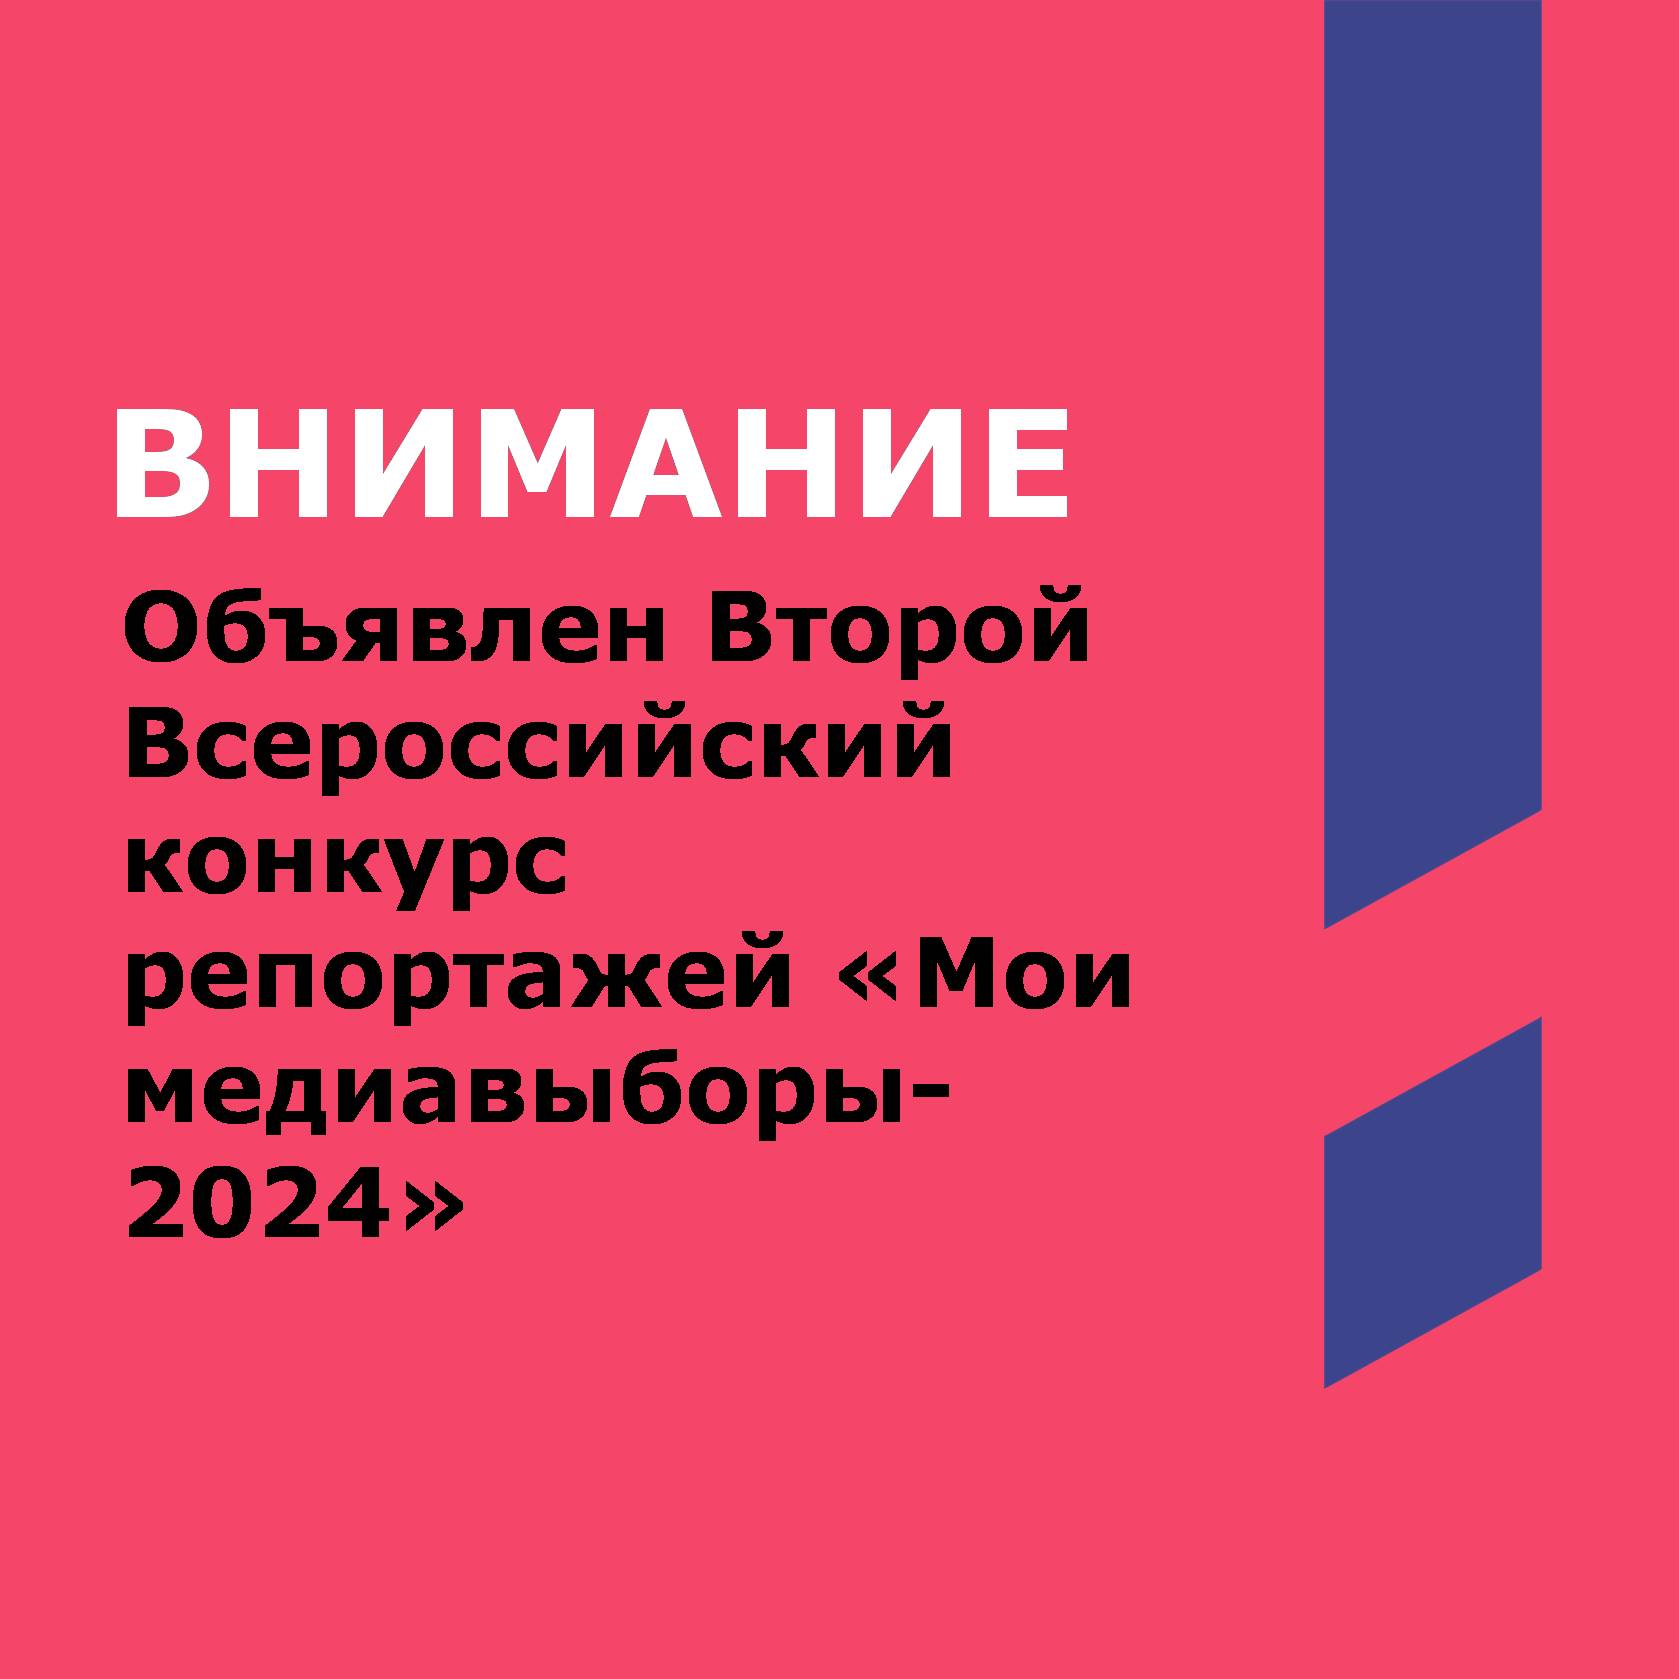 Конкурс репортажей "Мои медиавыборы-2024"